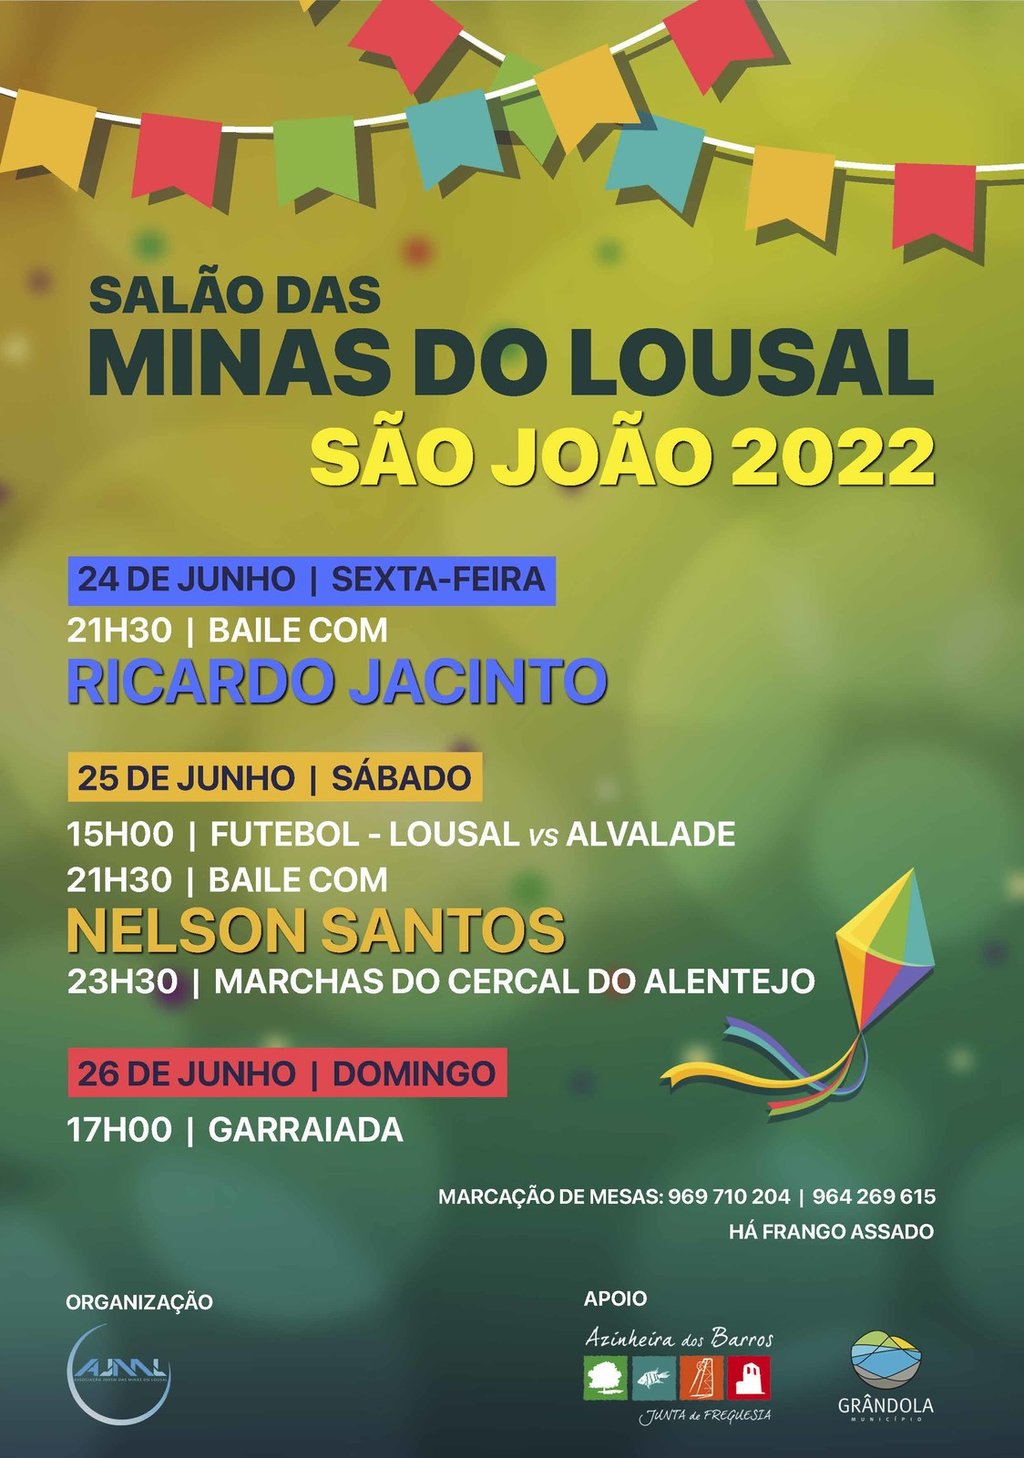 VERÃO | São João 2022 - Minas do Lousal